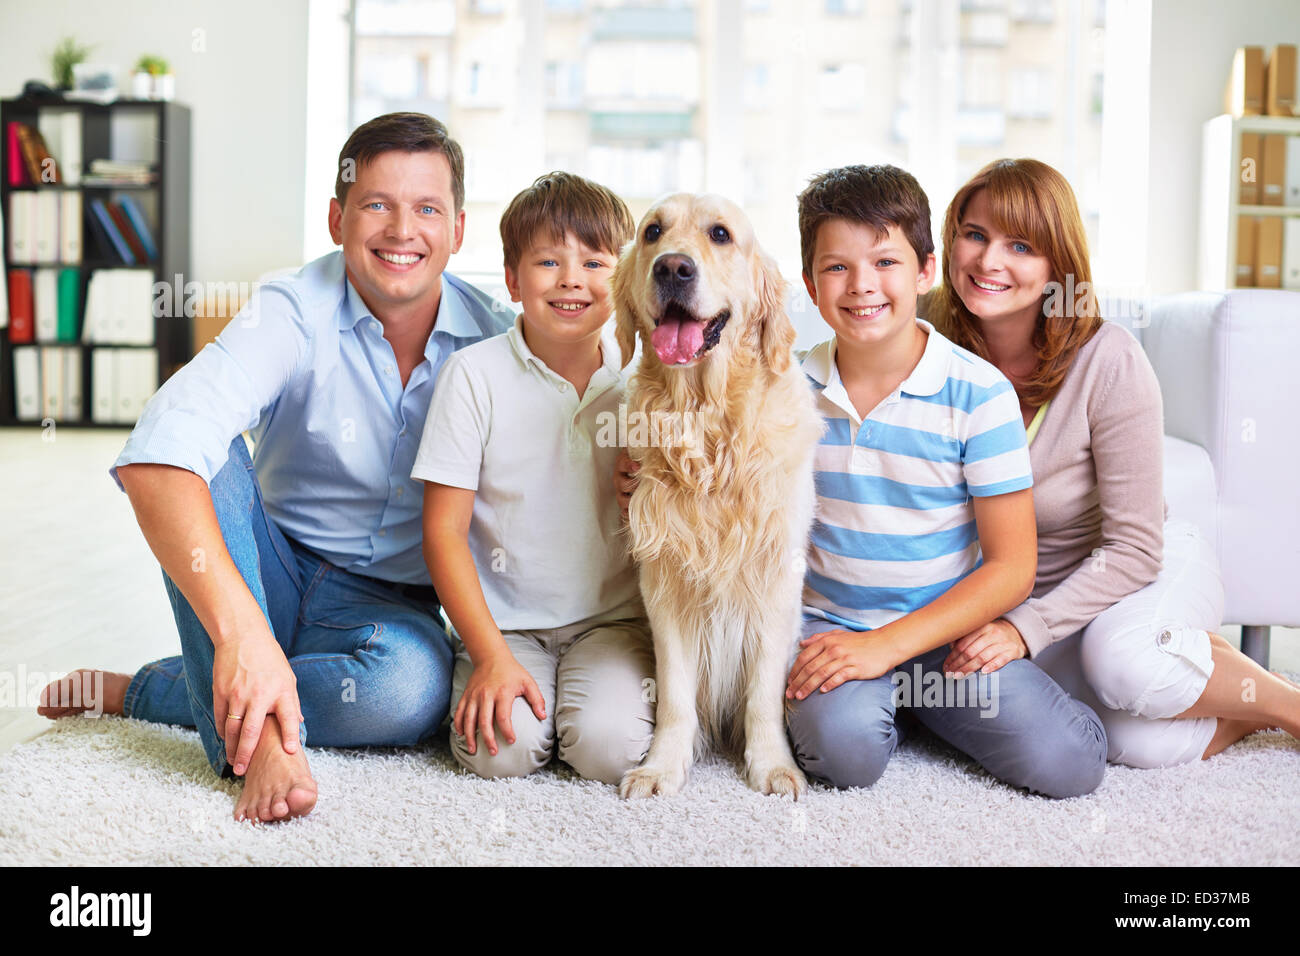 Afectuoso padre, madre, hermanos y esponjosos pet sentado en el suelo Foto de stock